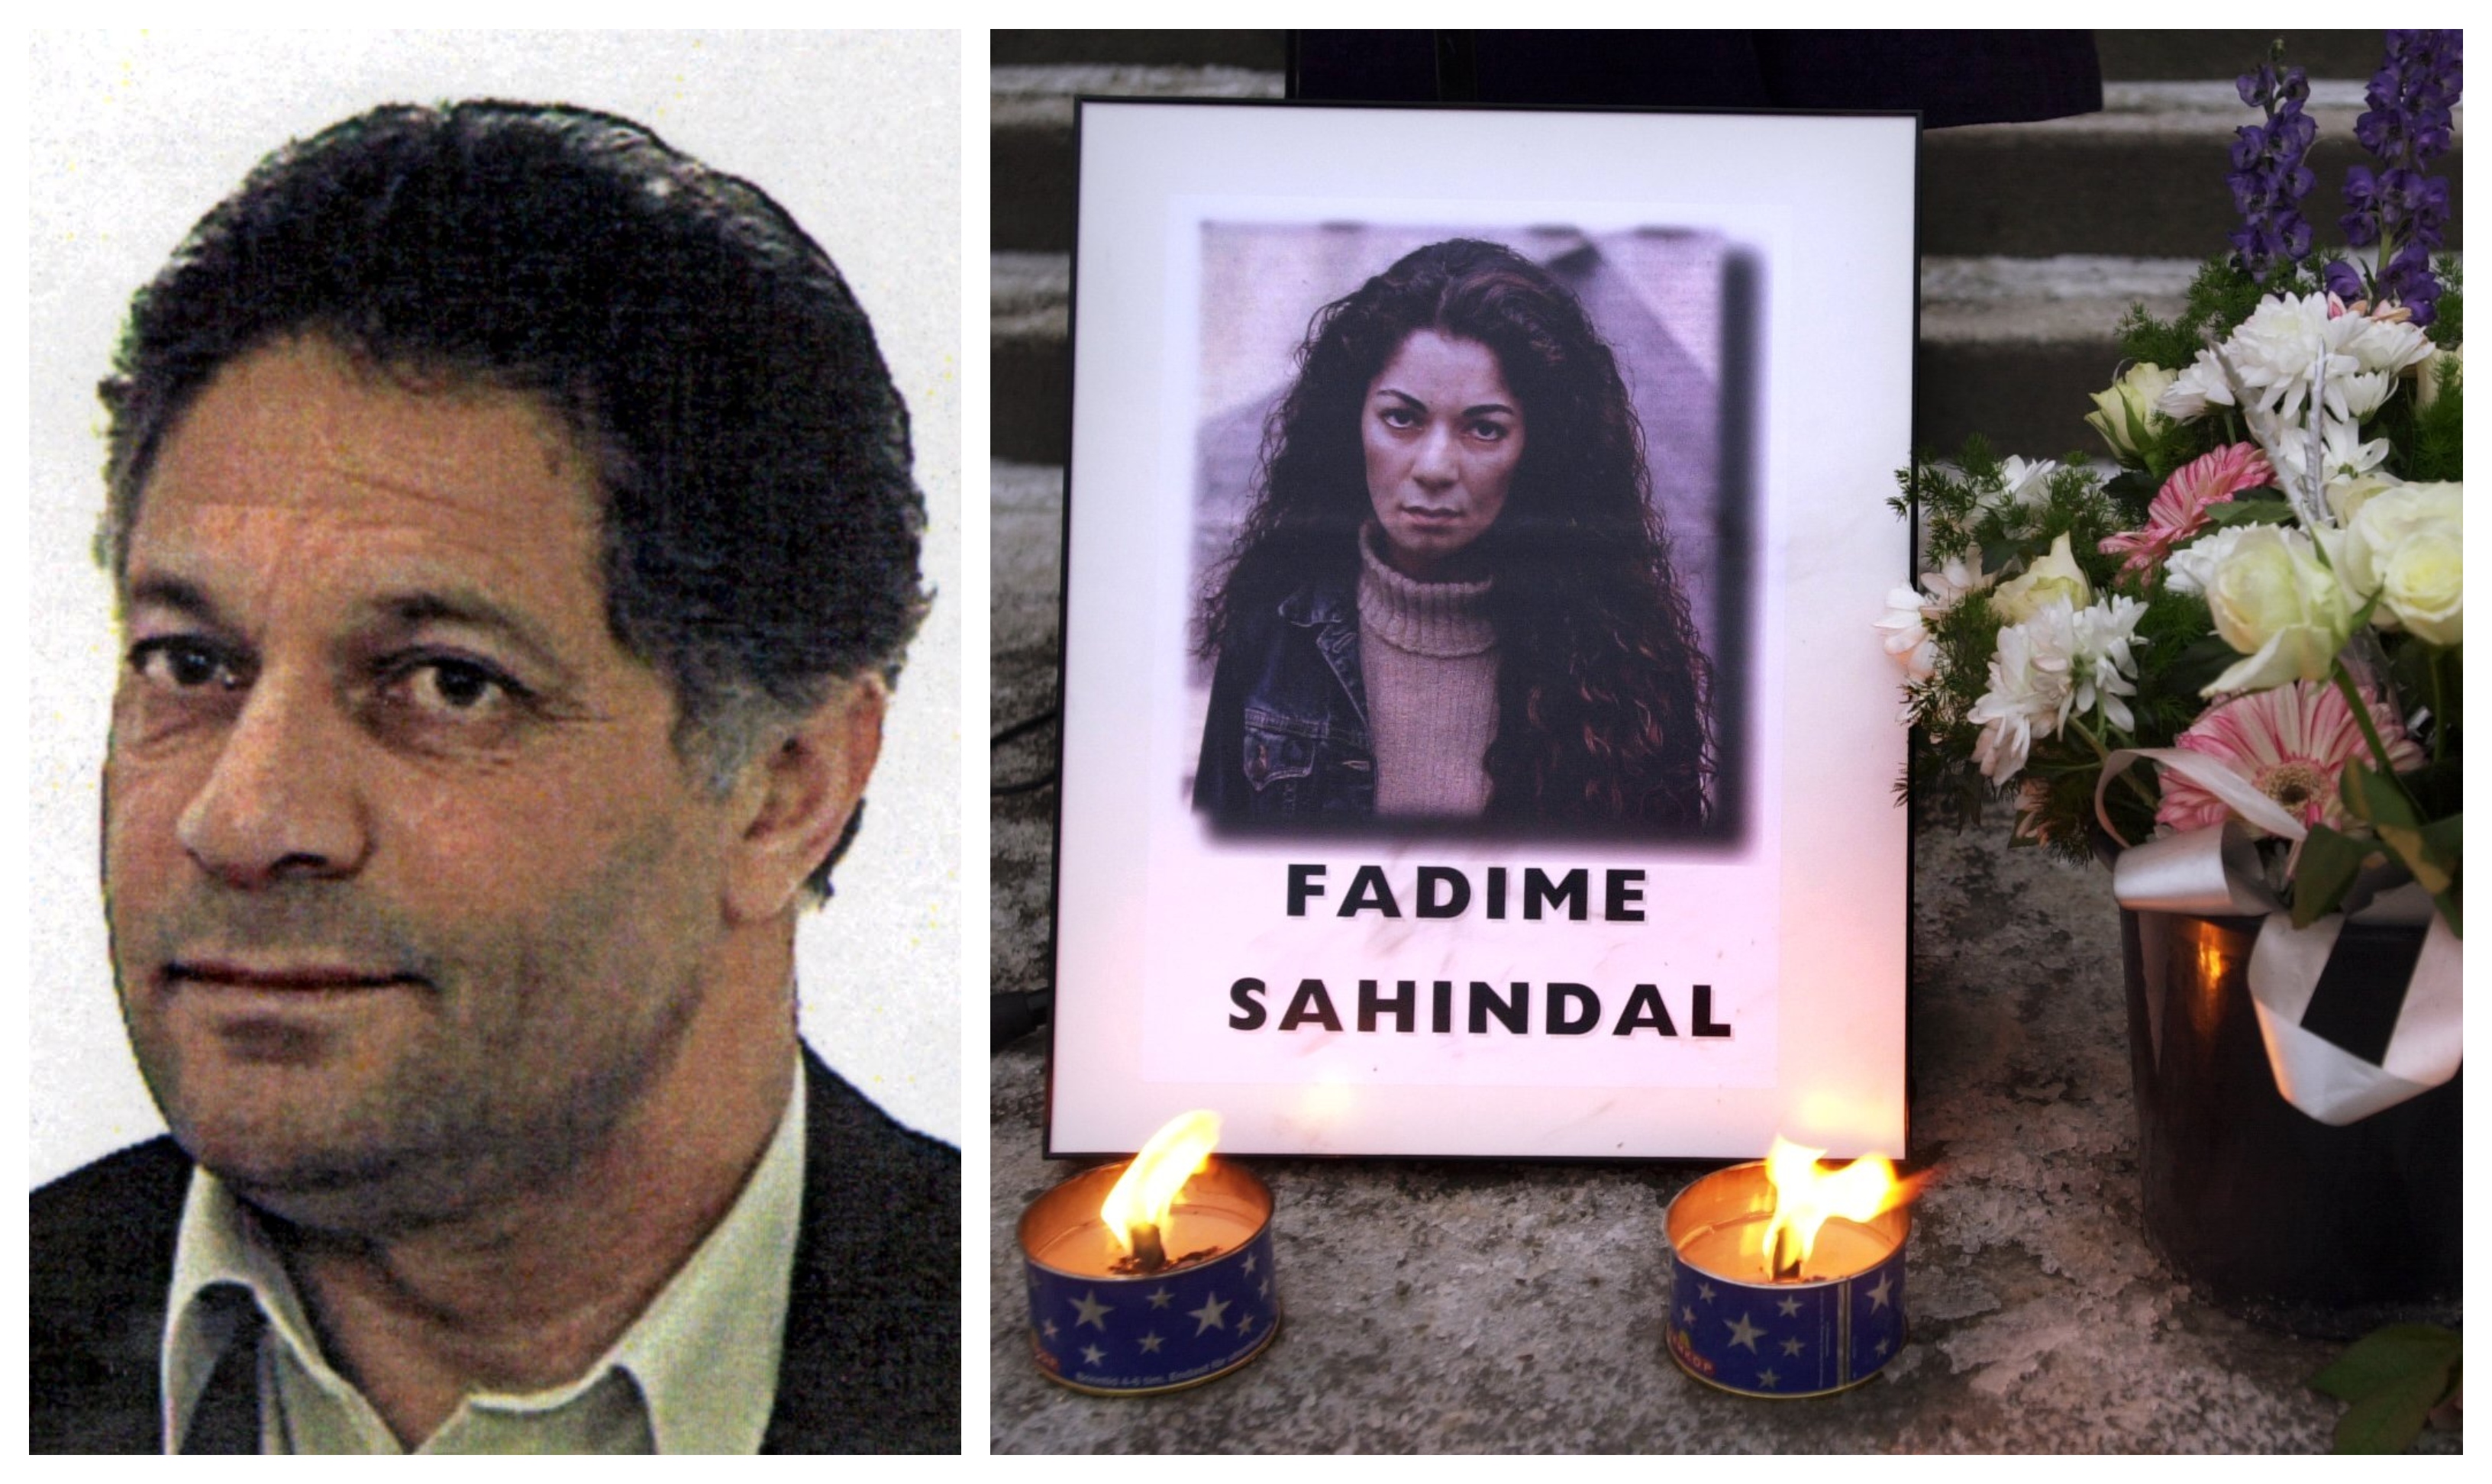 Rahmi Sahindal dömdes för mordet på sin dotter Fadime Sahindal år 2002.